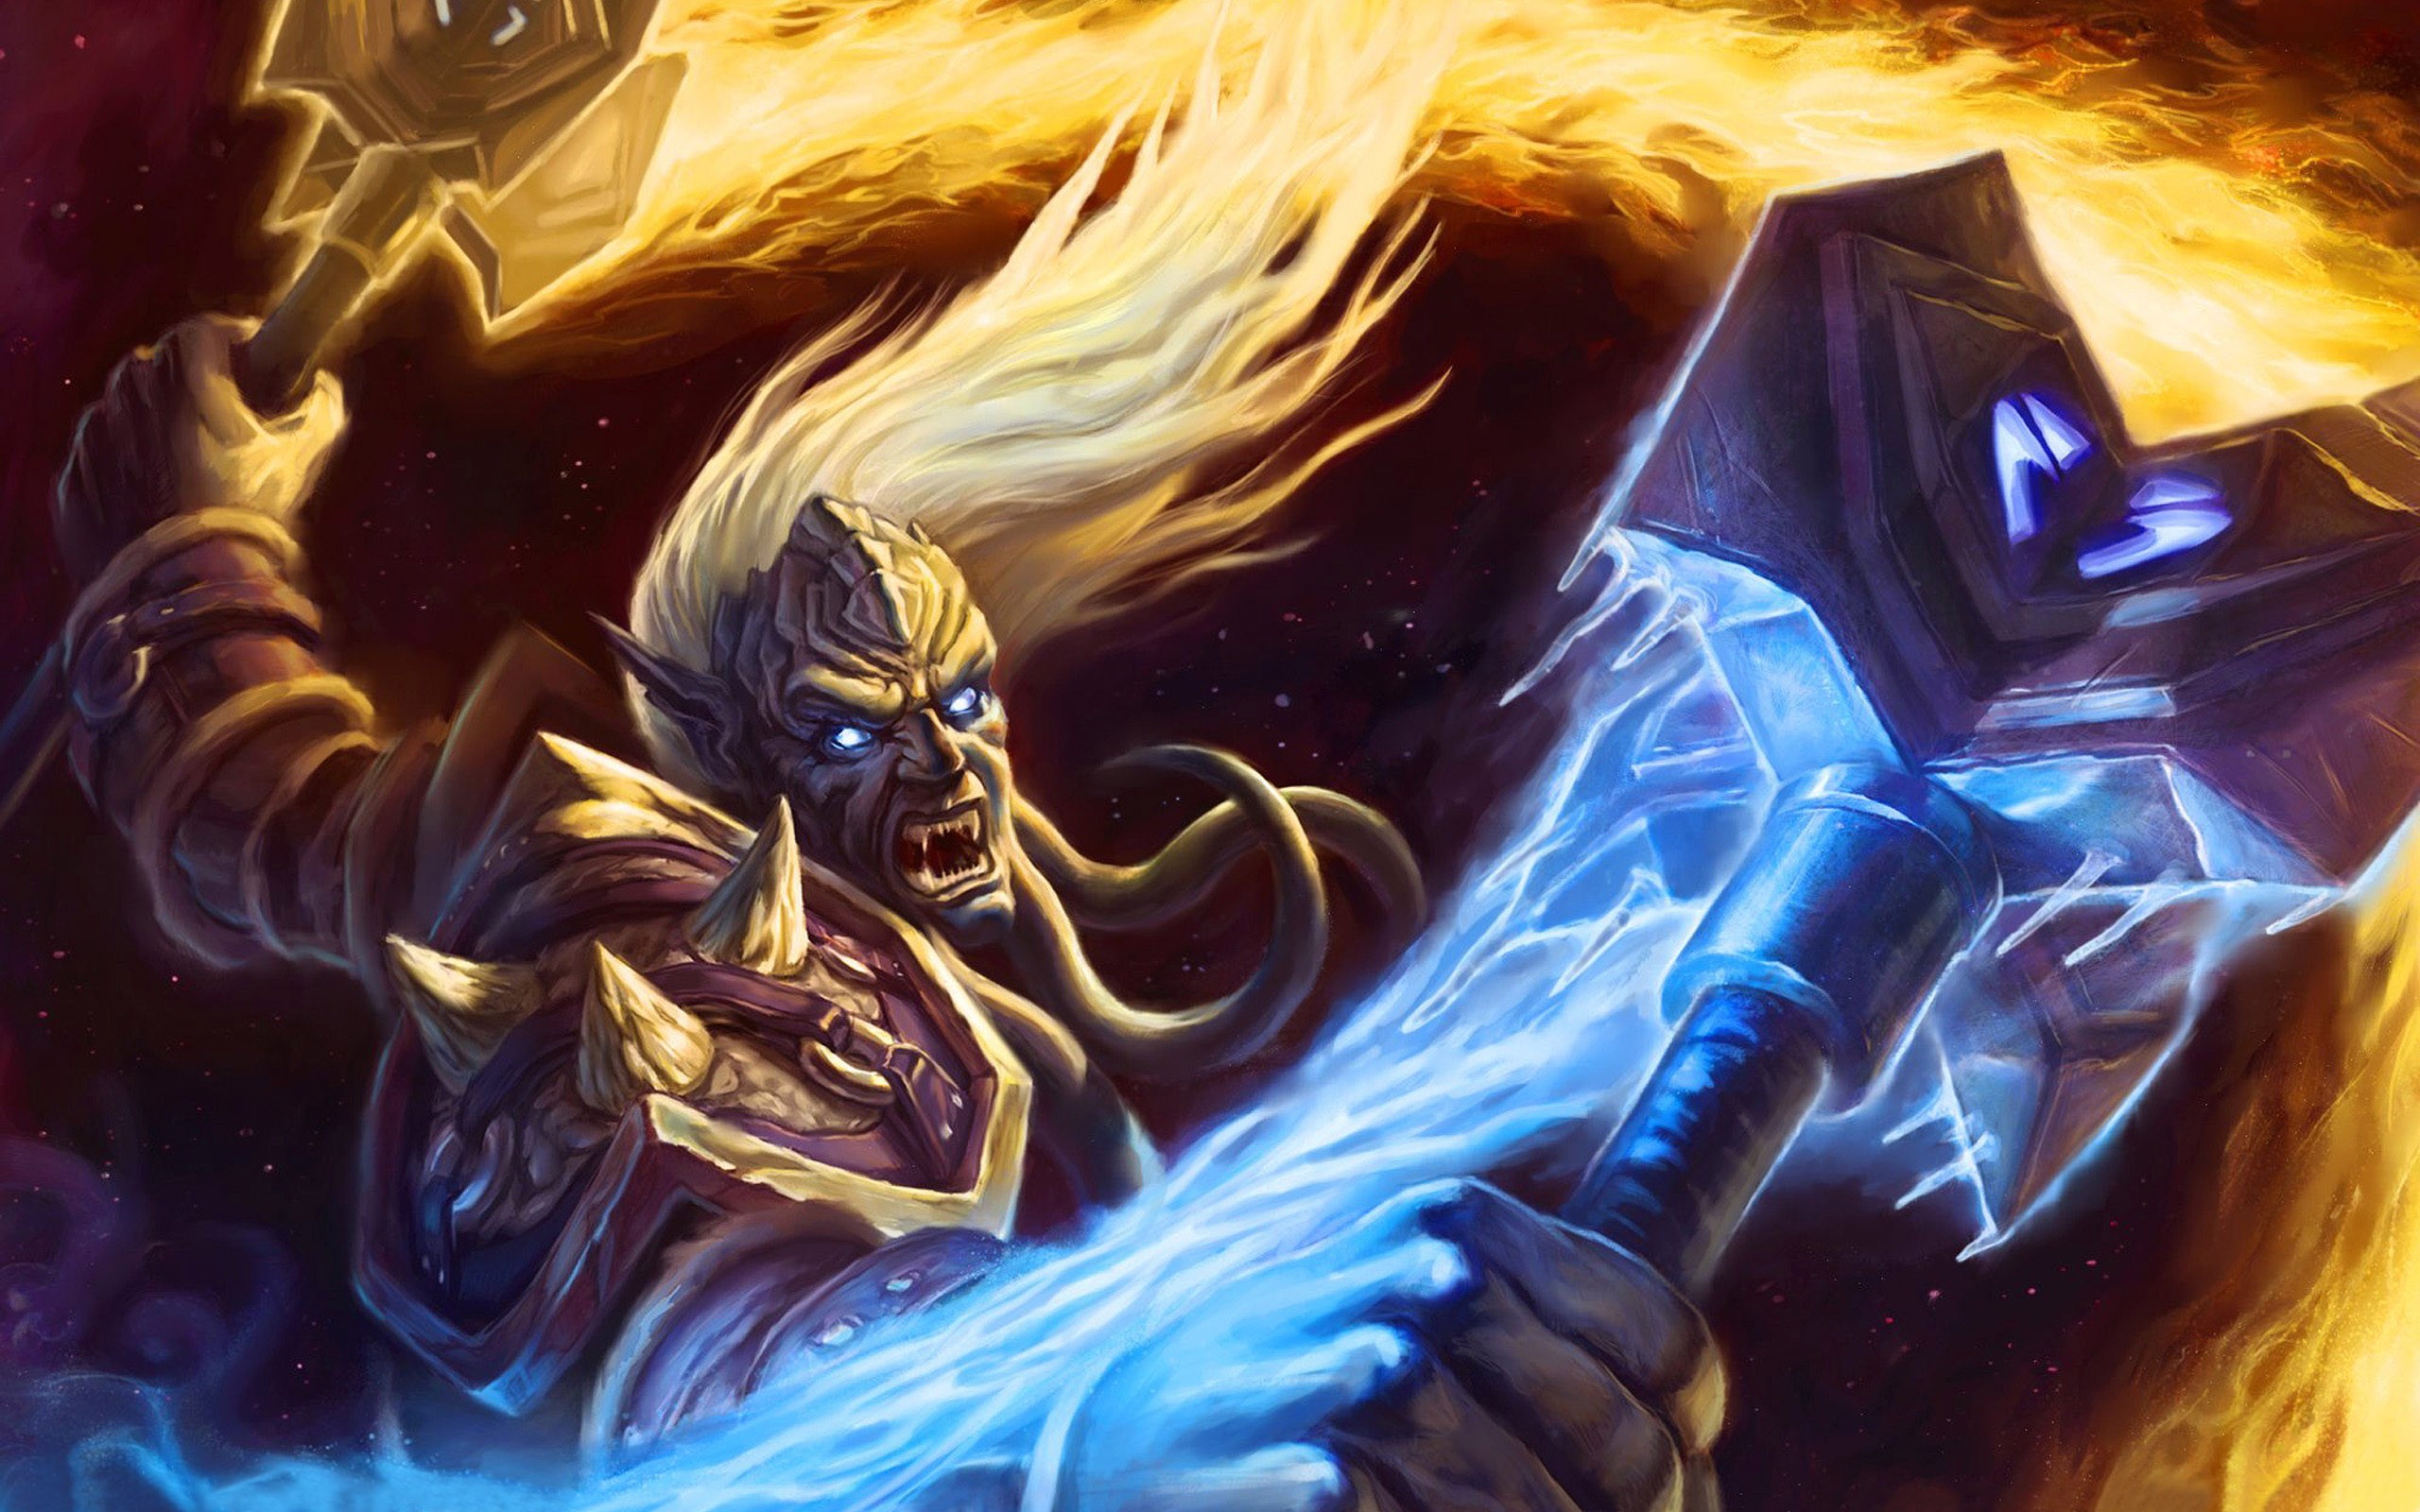 General 2560x1600 World of Warcraft draenei PC gaming fantasy art video game art